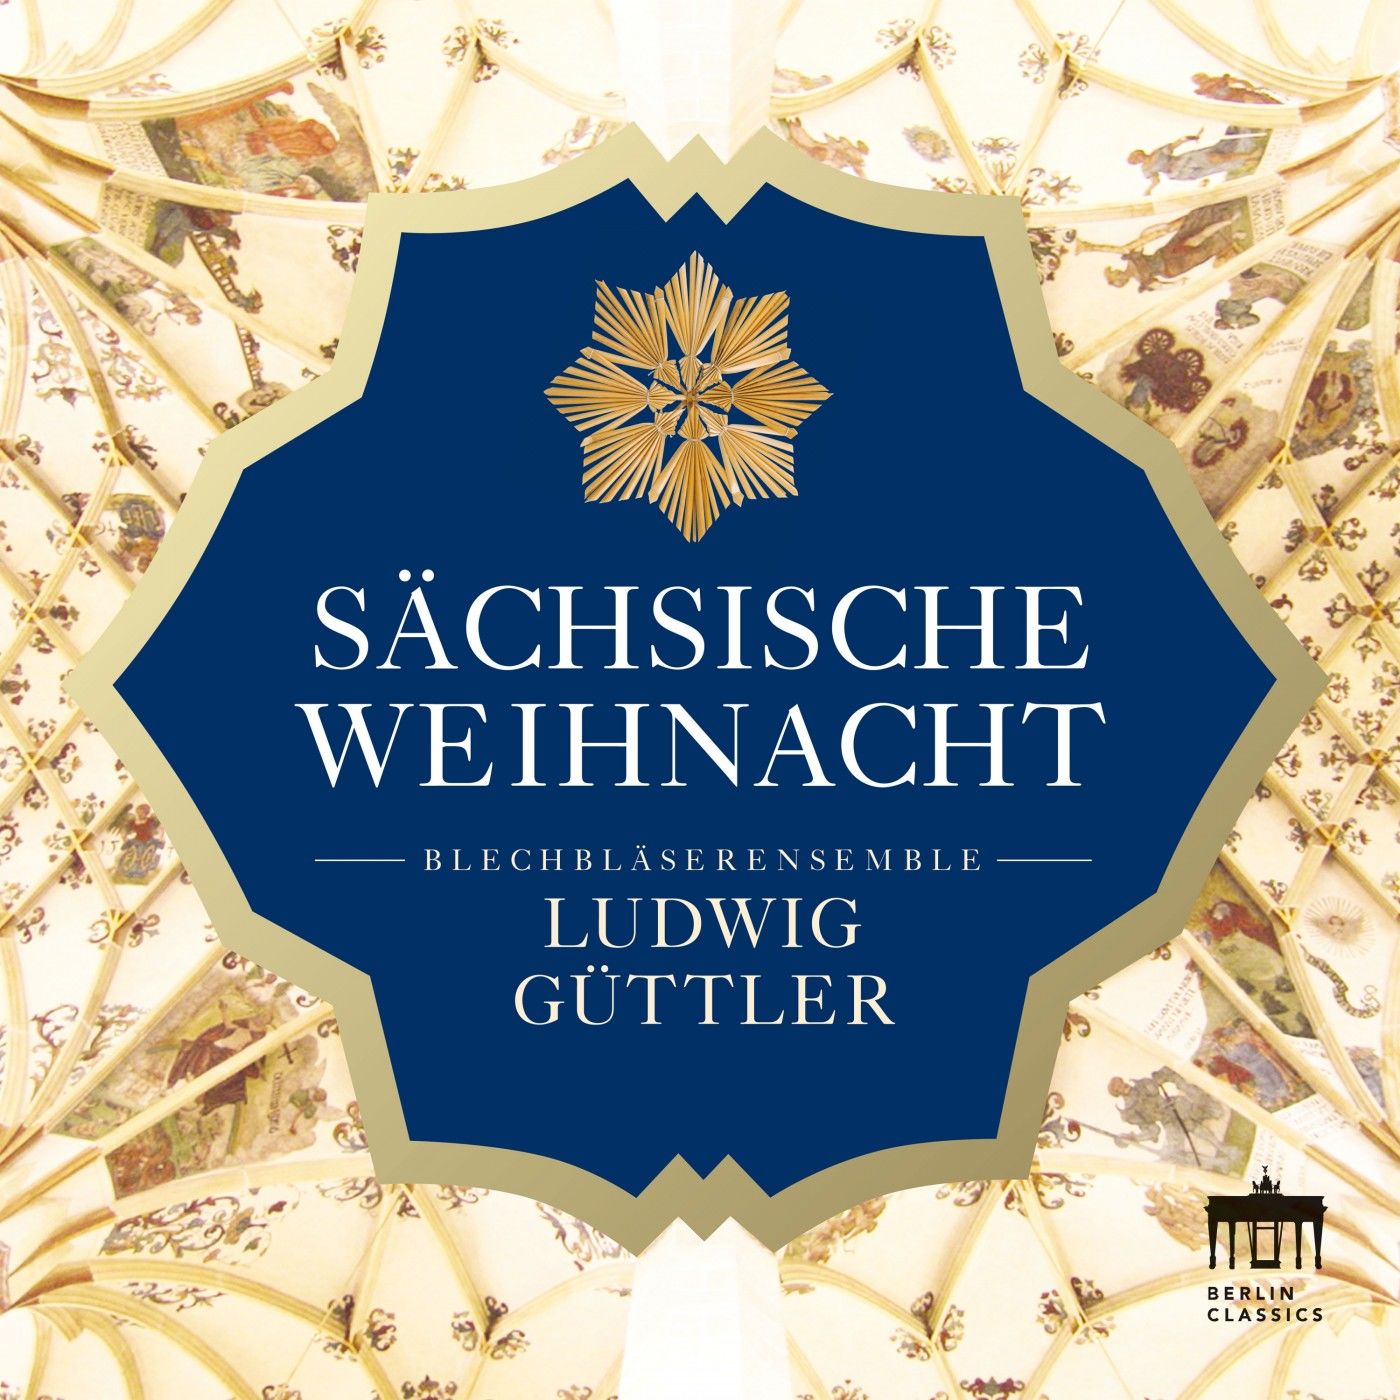 Ludwig Guttler – Sachsische Weihnacht (2020) [FLAC 24bit/48kHz]